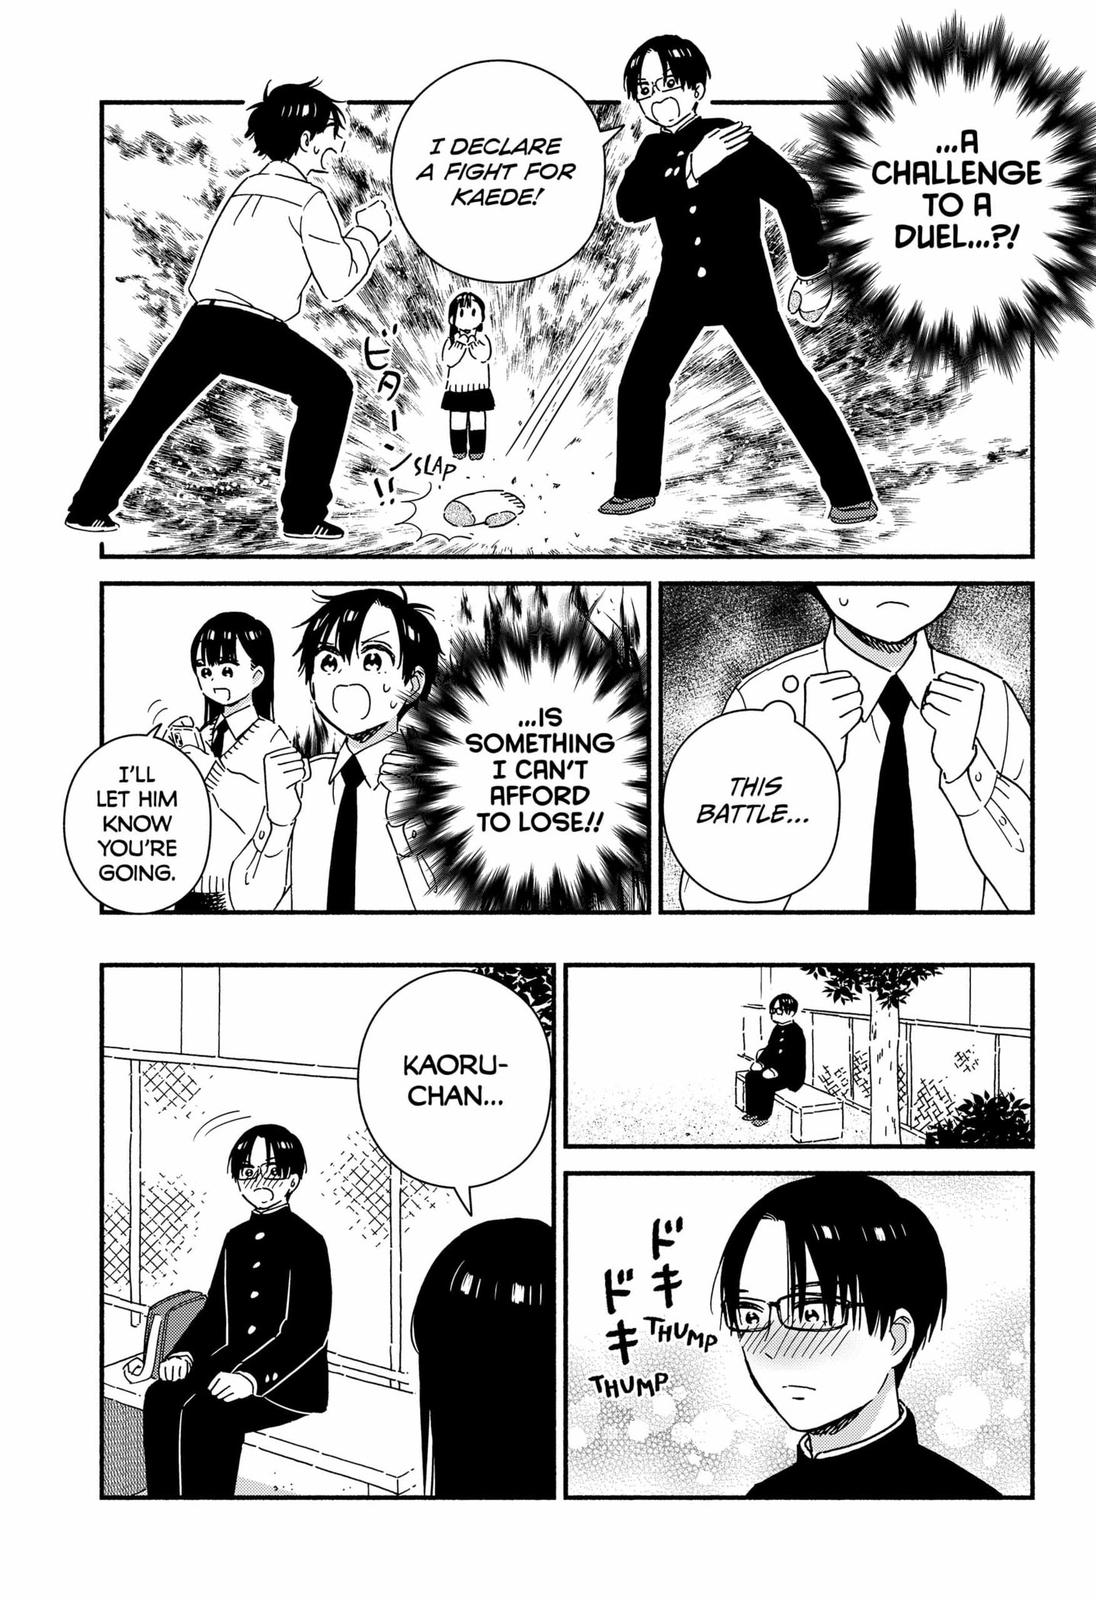 Don't Blush, Sekime-San! - Page 3